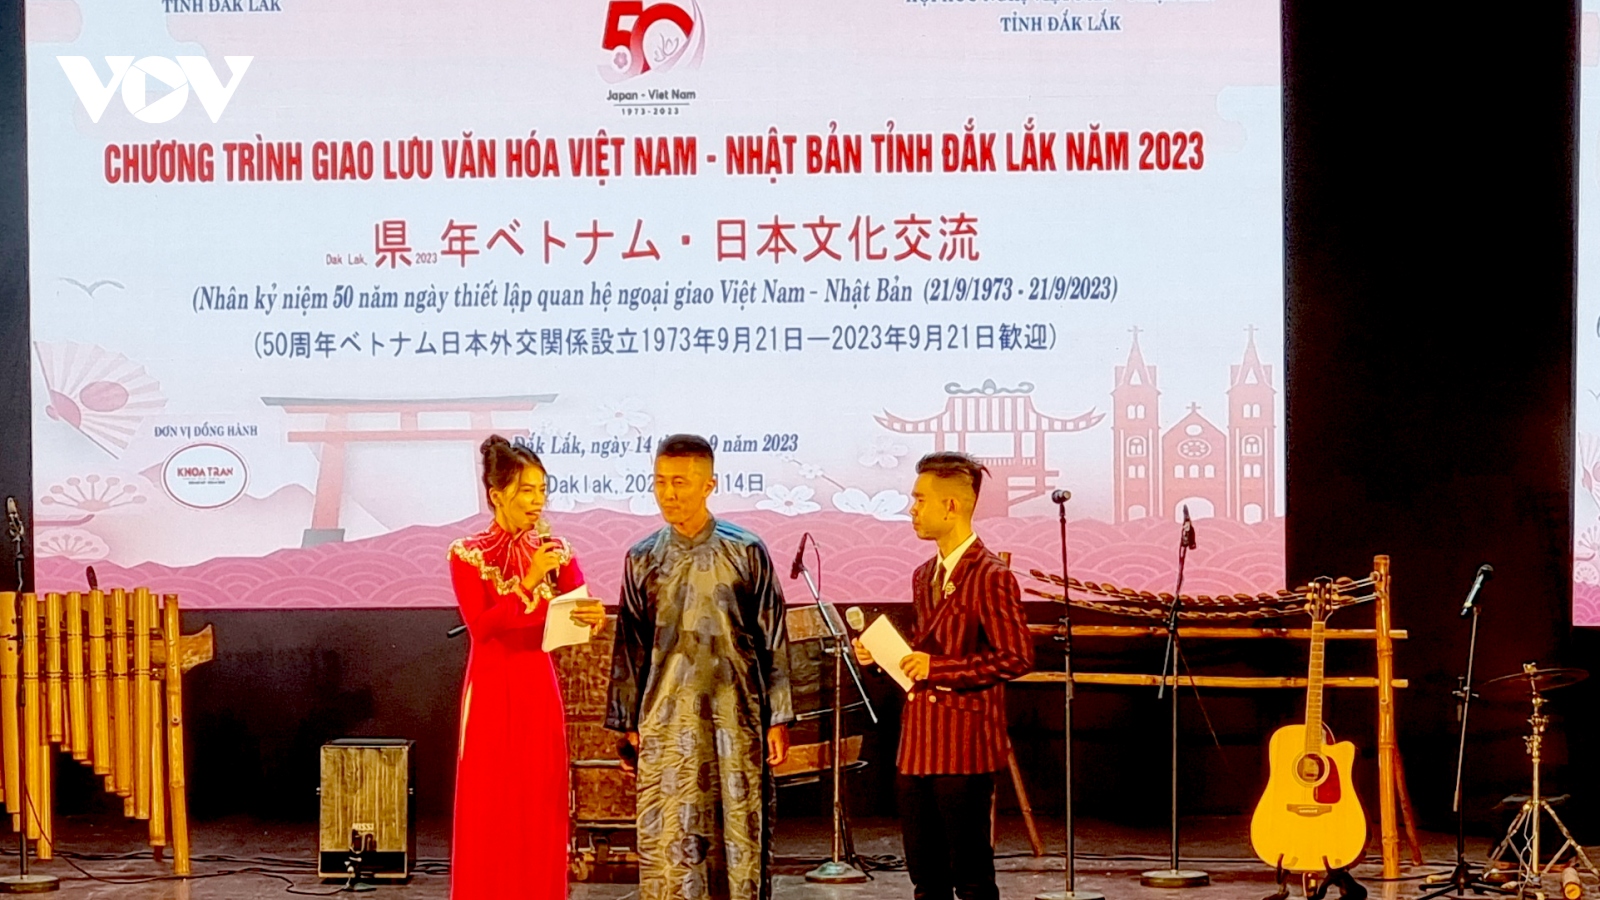 Giao lưu văn hóa Việt Nam - Nhật Bản tại Đắk Lắk